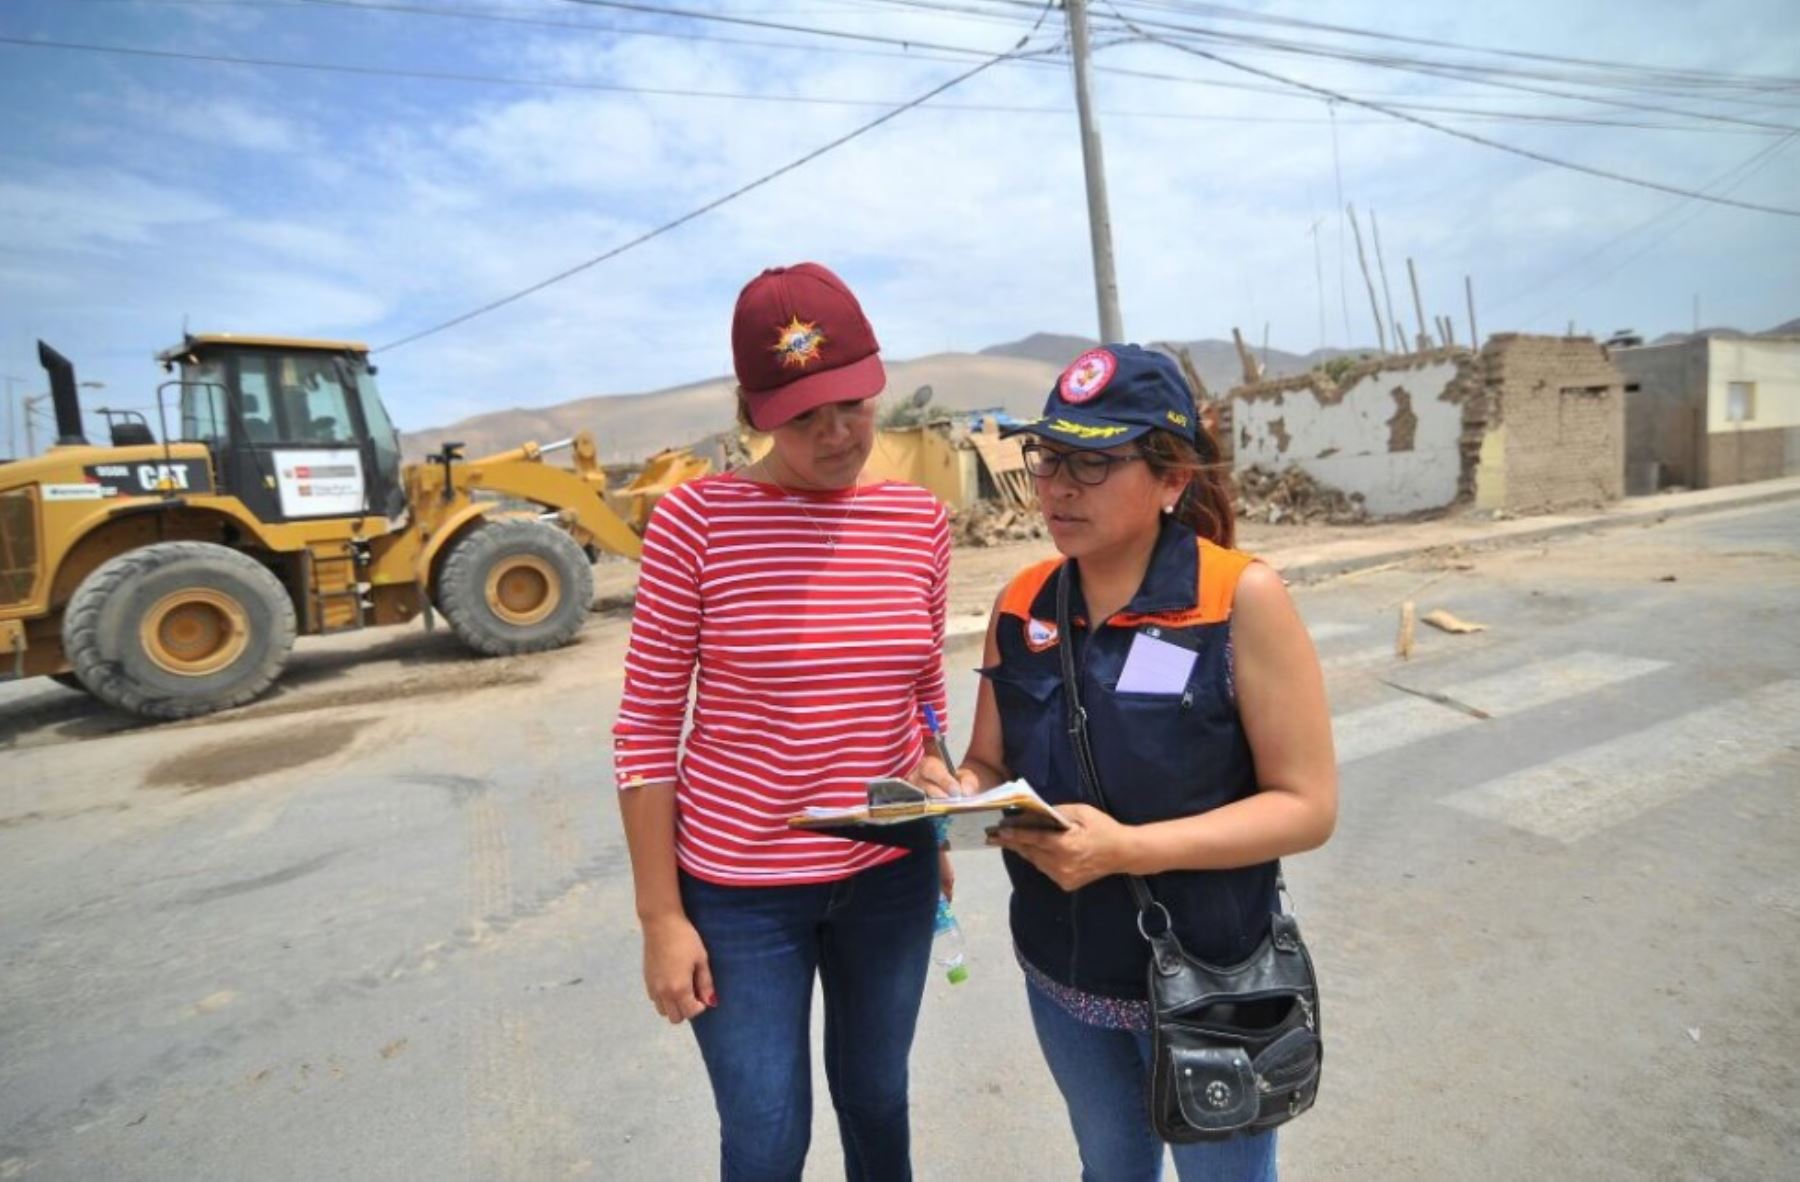 La gobernadora regional de Arequipa, Yamila Osorio, supervisó hoy la instalación de los 20 primeros módulos de vivienda que envió el Ministerio de Vivienda a la provincia de Caravelí, afectada el domingo último por un sismo de 6.8 grados que provocó el colapso de 205 viviendas.